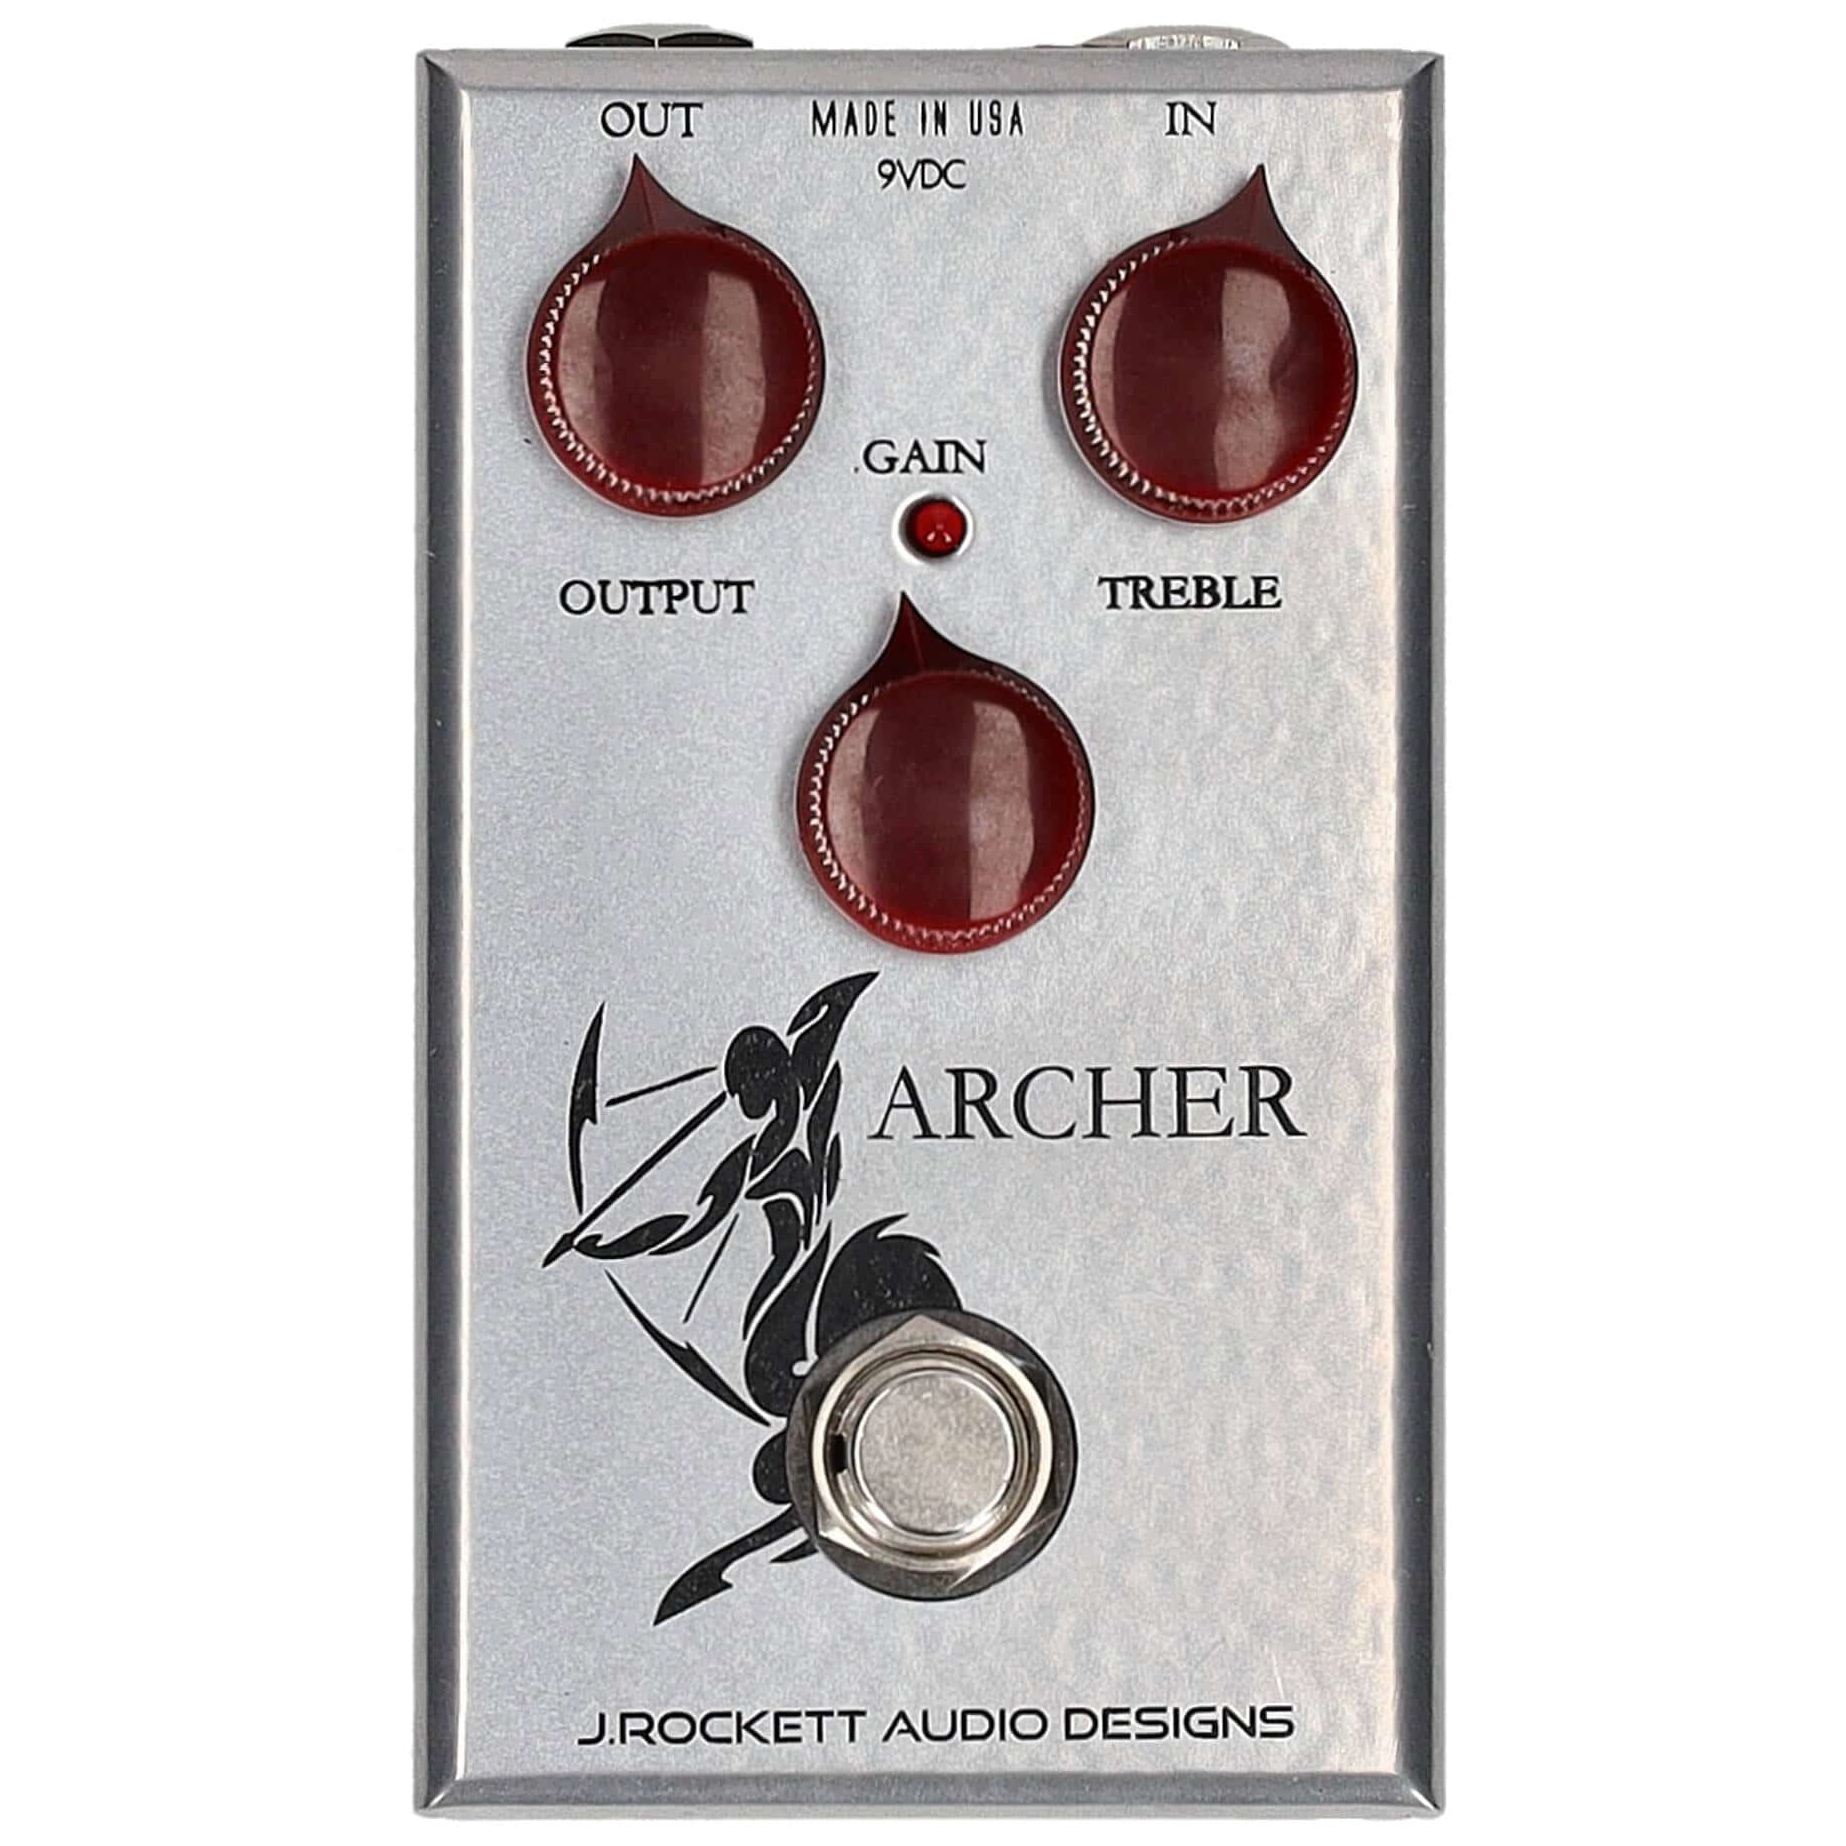 J. Rockett Audio Designs Archer